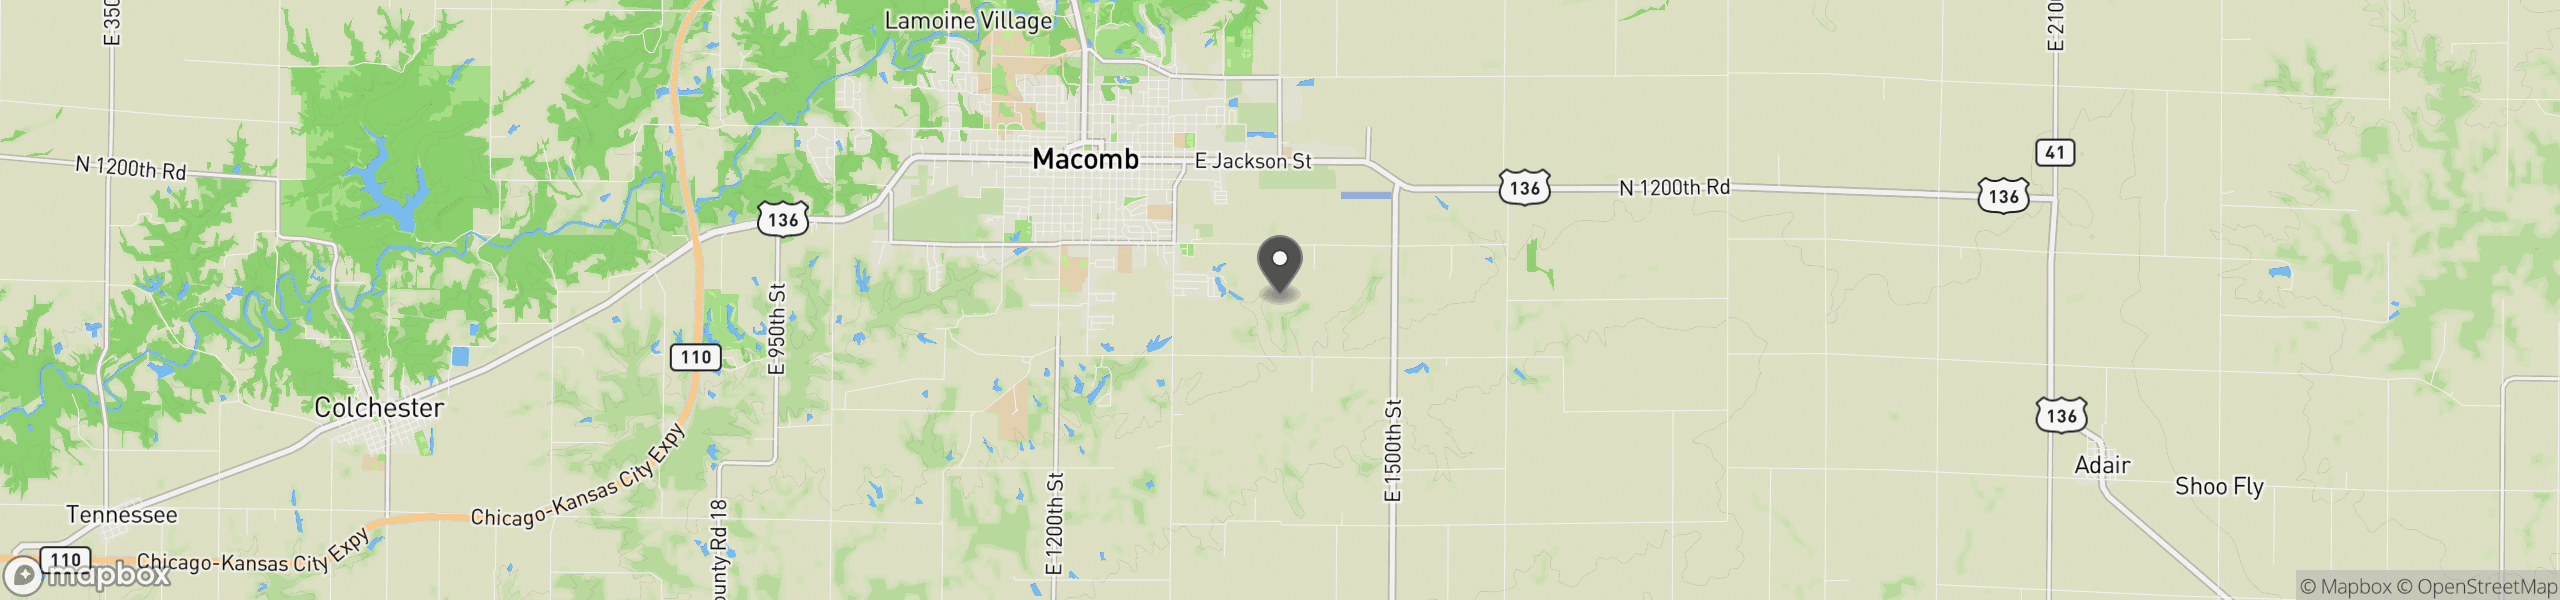 Macomb, IL 61455